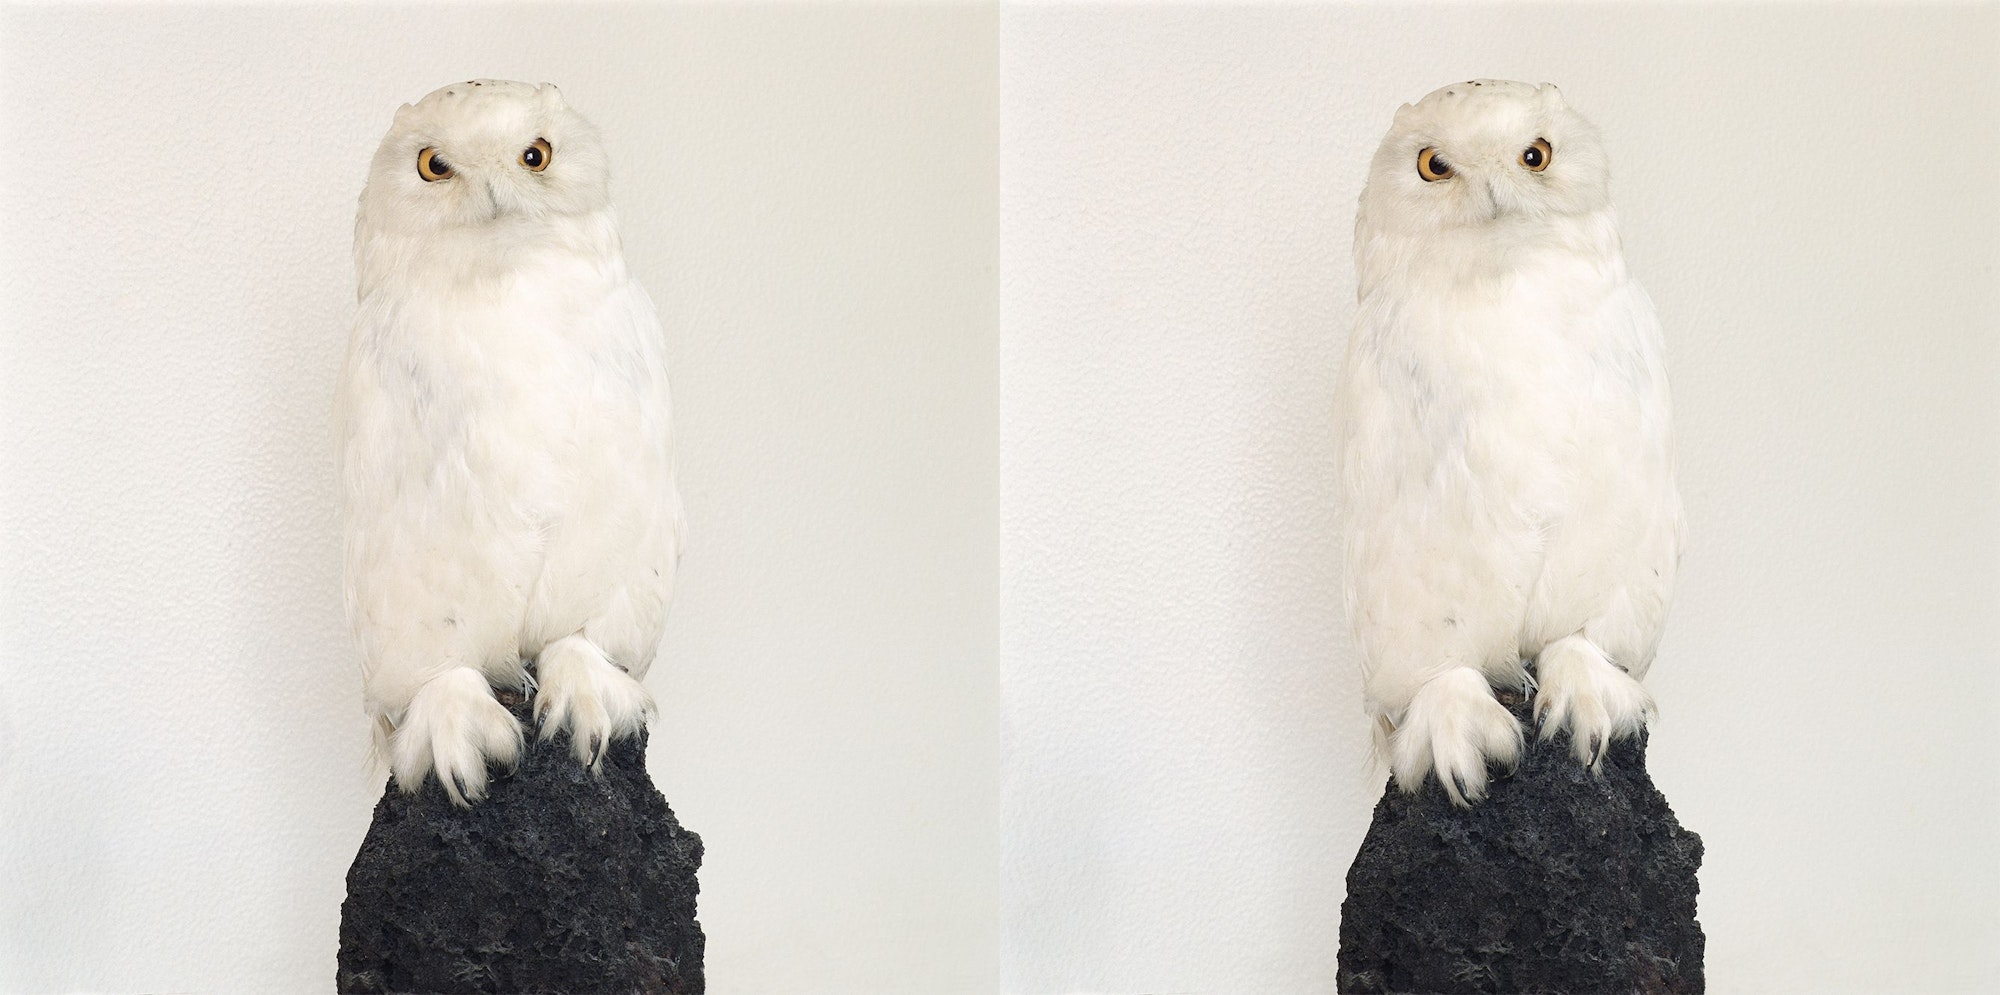 Roni Horn liebt Bilderpaare, bei denen man nicht weiß, ob sie das Gleiche oder verschiedene Sachen zeigen: „Dead Owl“ aus dem Jahr 1997.